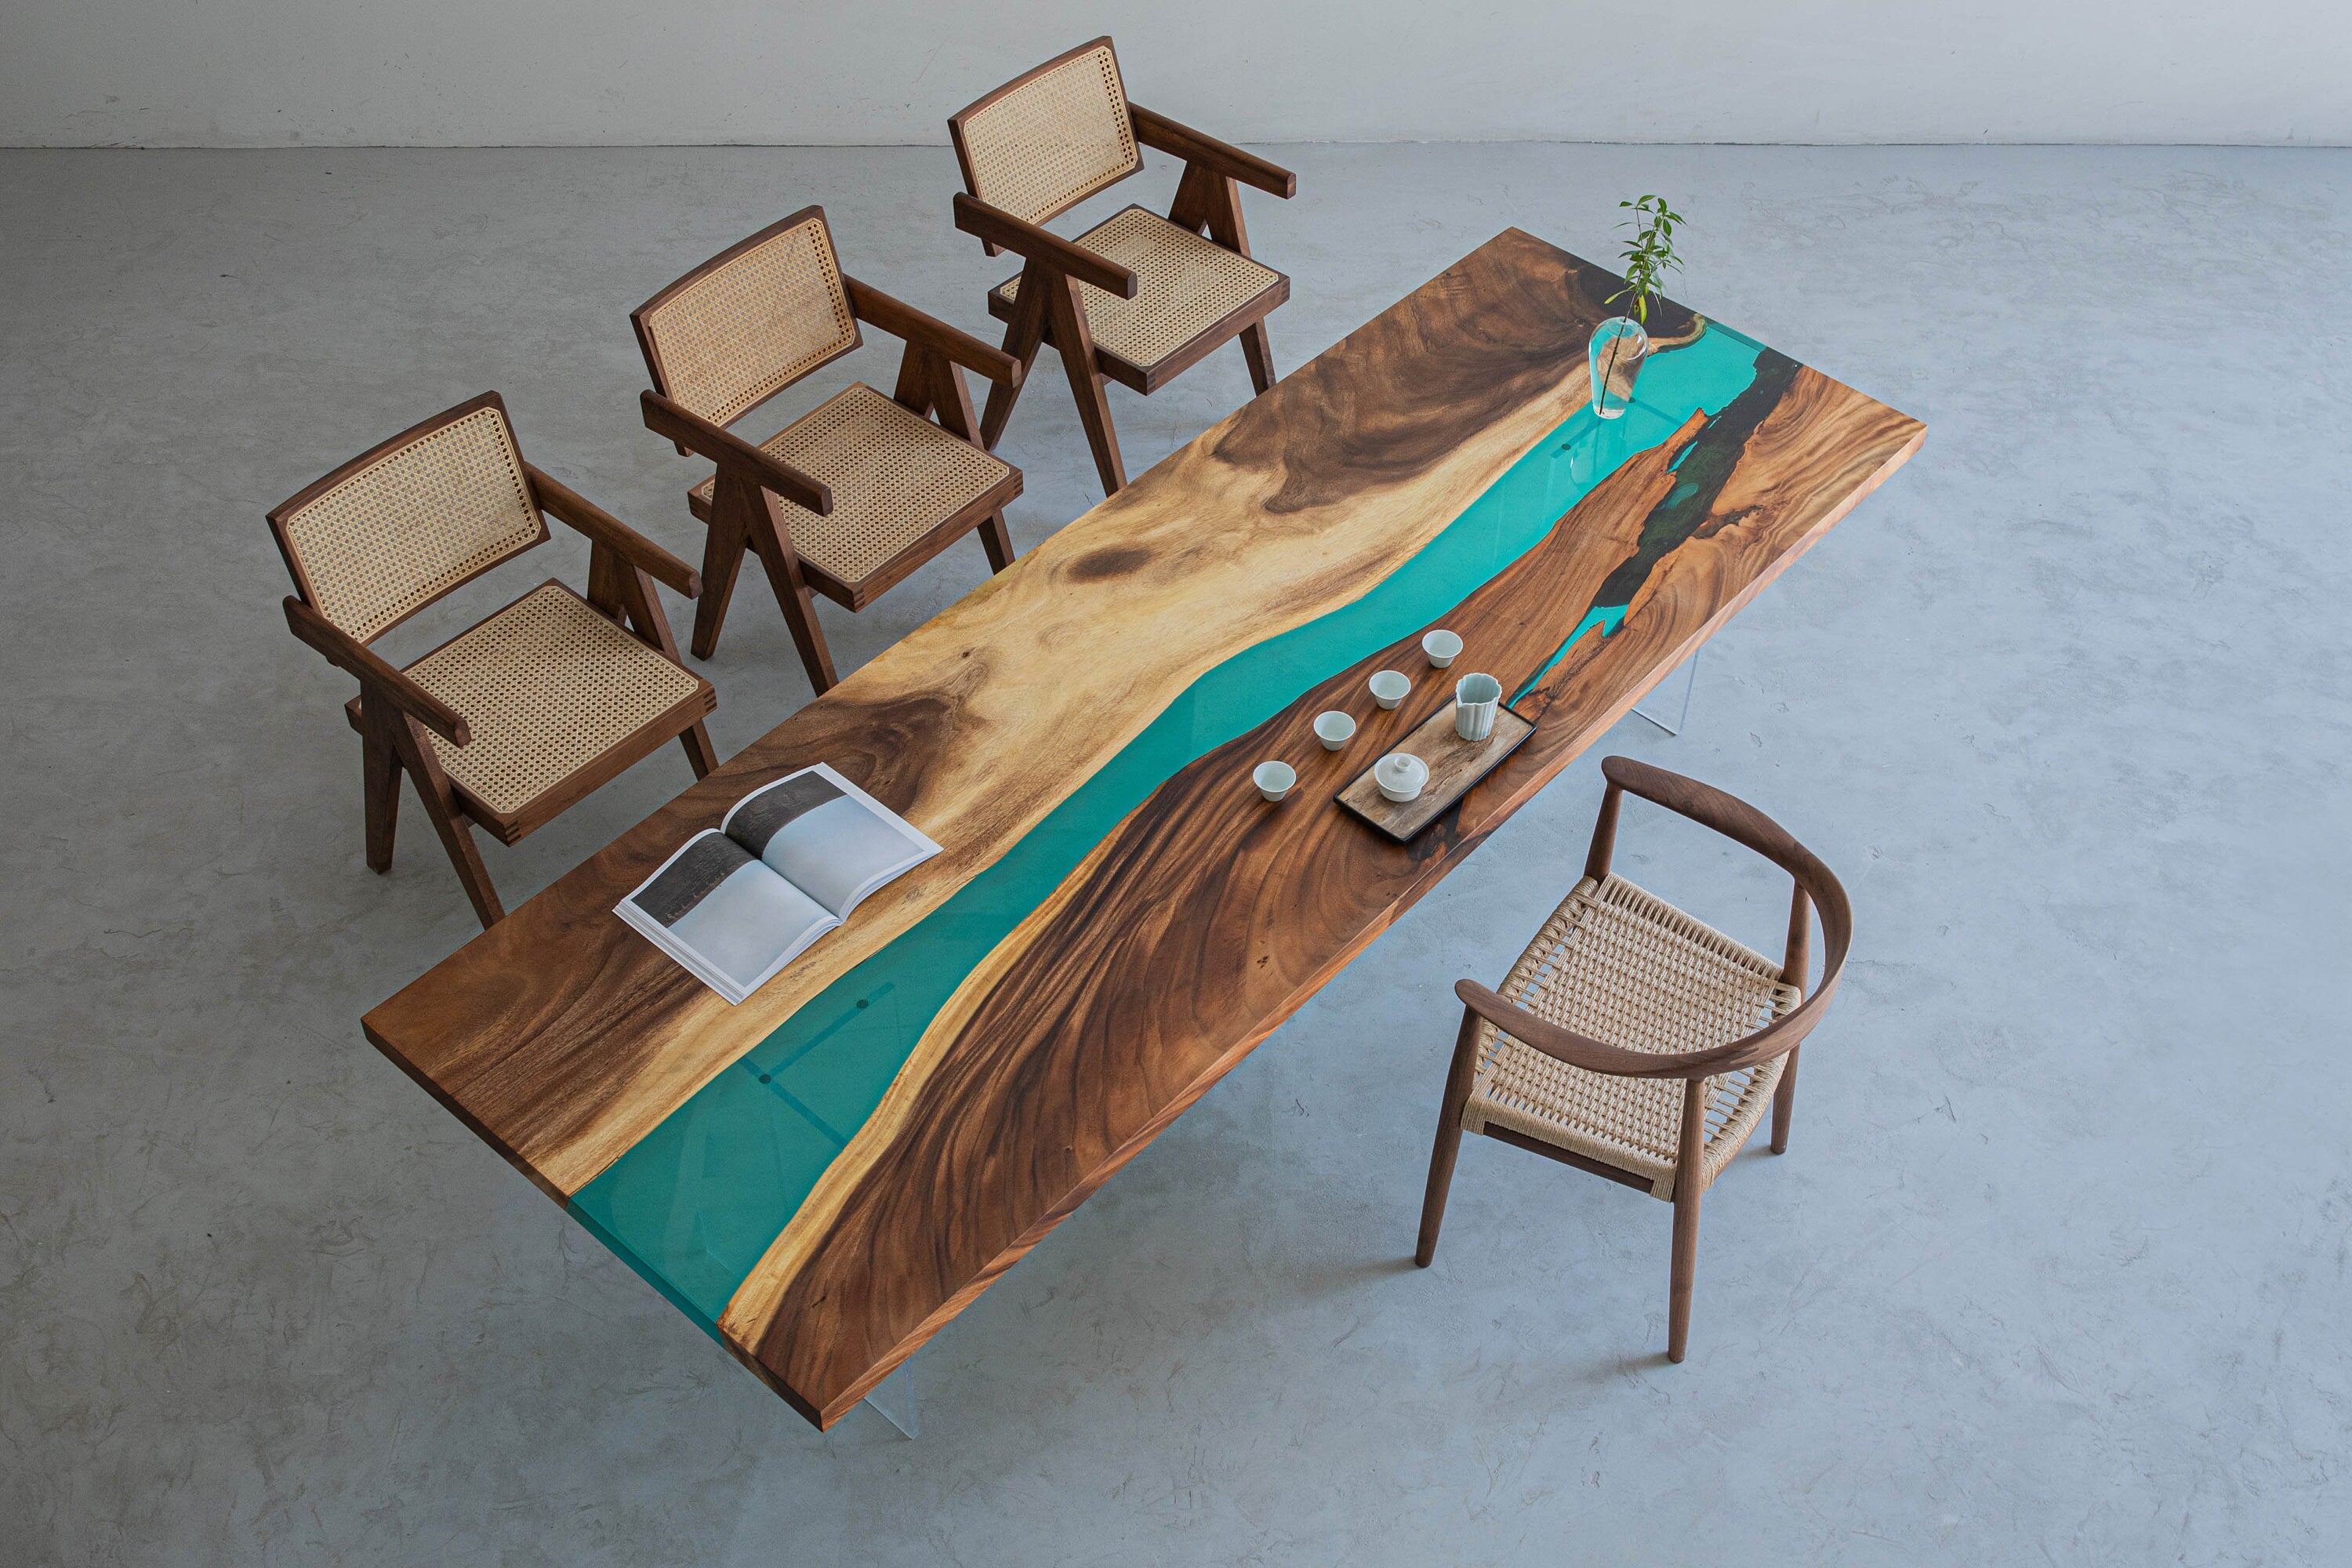 ウォールナット材エポキシ樹脂テーブル、エポキシ樹脂アカシアダイニングテーブル